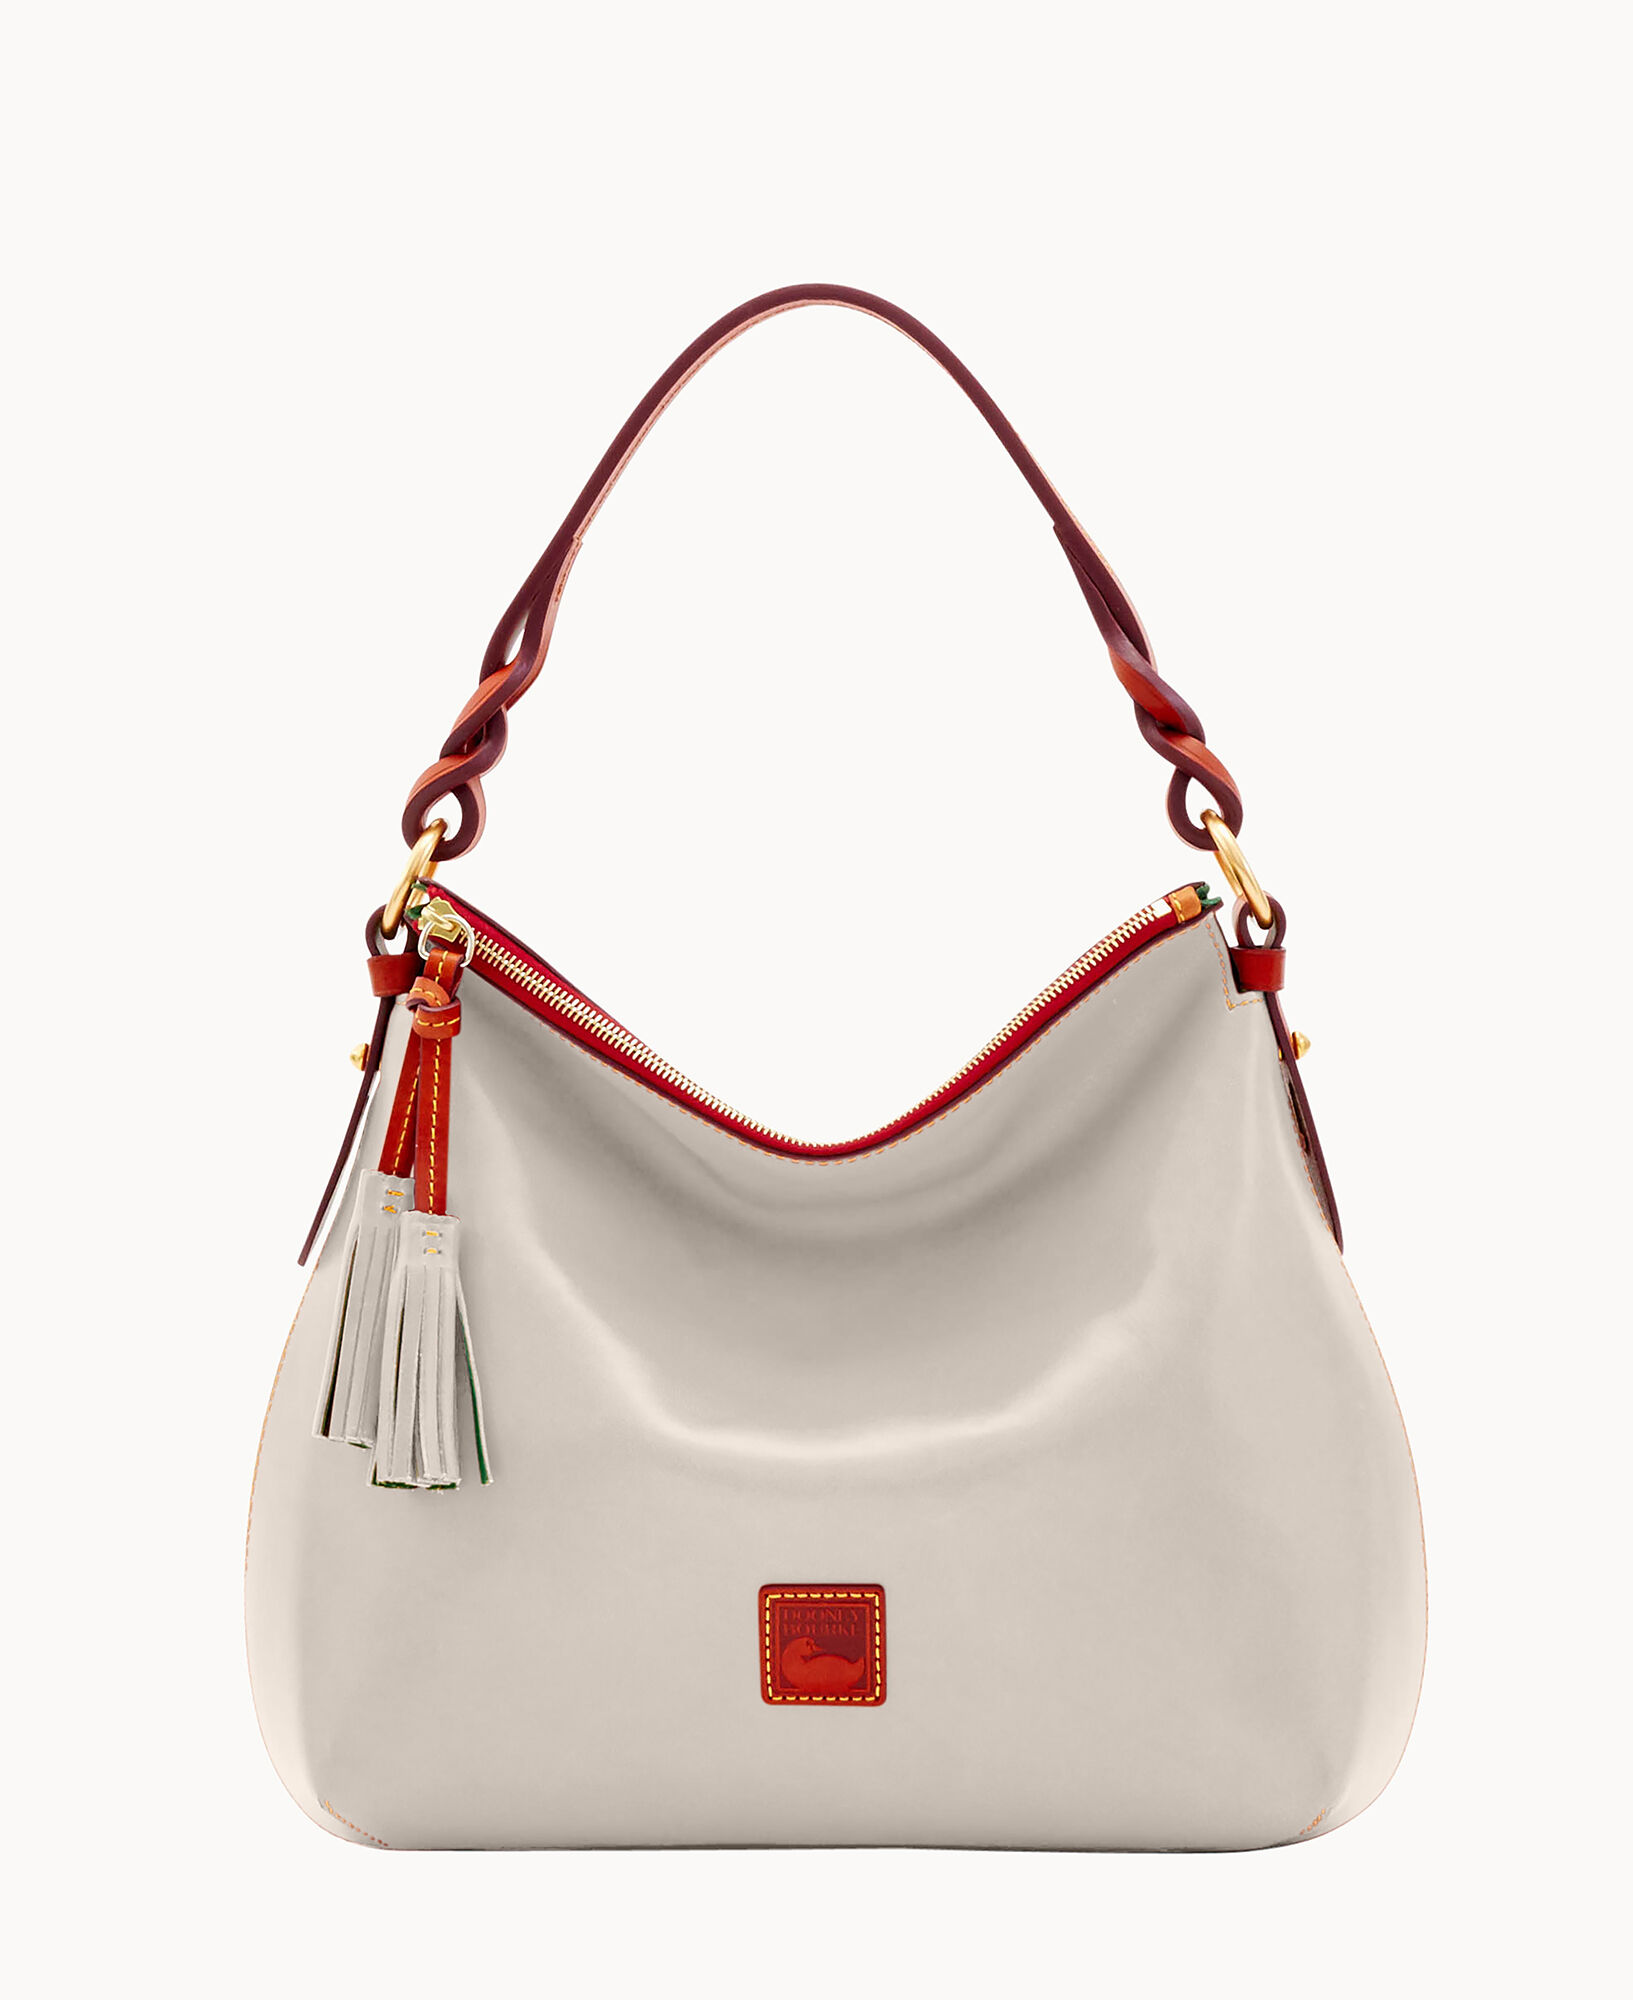 Dooney & Bourke Handbag, Florentine Twist Strap Hobo Shoulder Bag